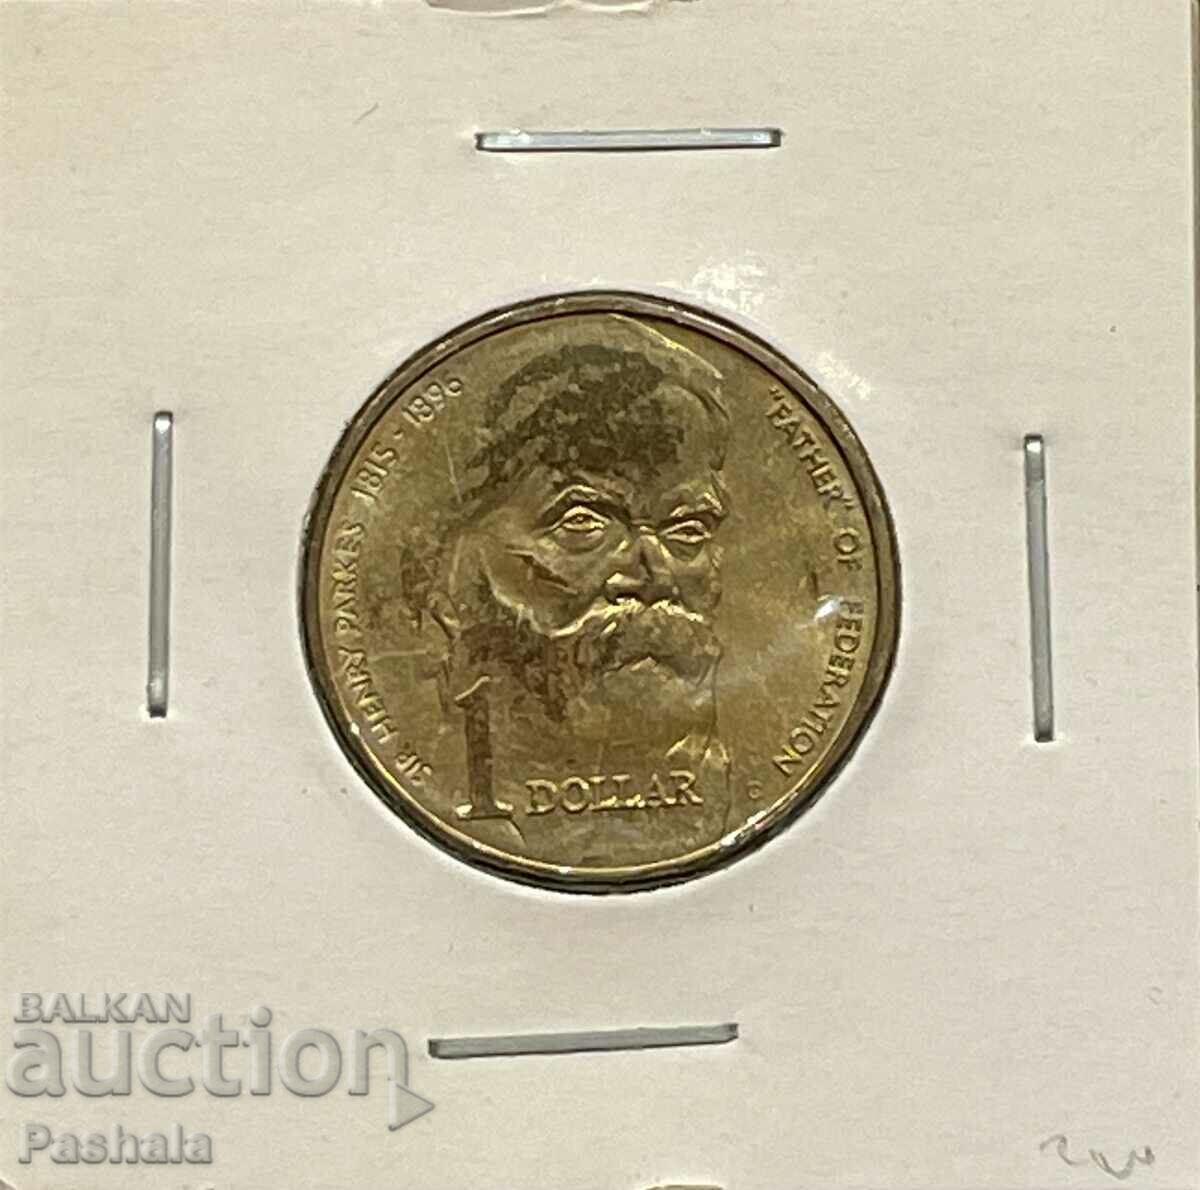 Australia $1 1995